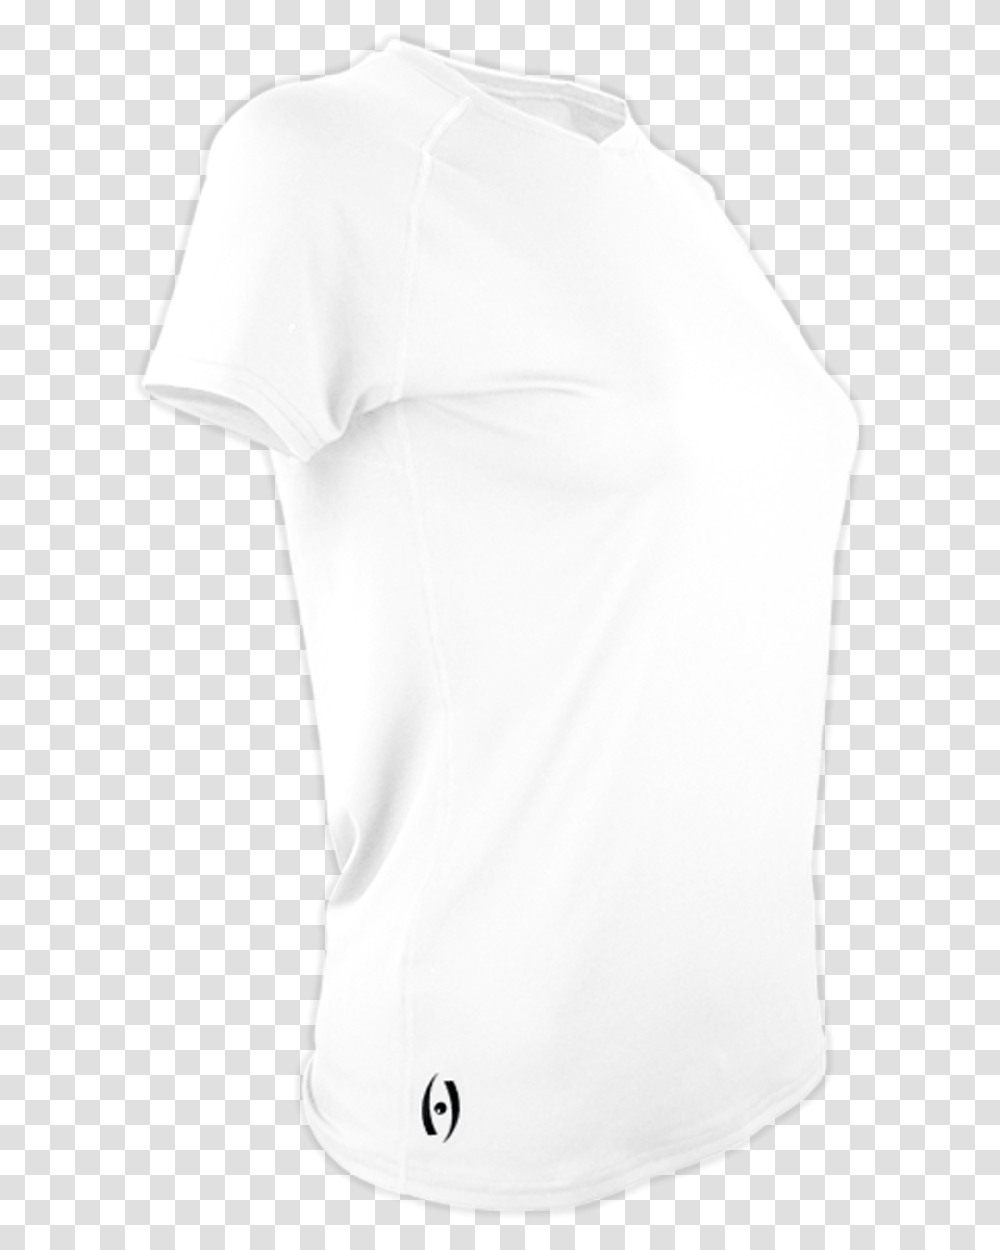 Active Shirt, Apparel, Sleeve, T-Shirt Transparent Png